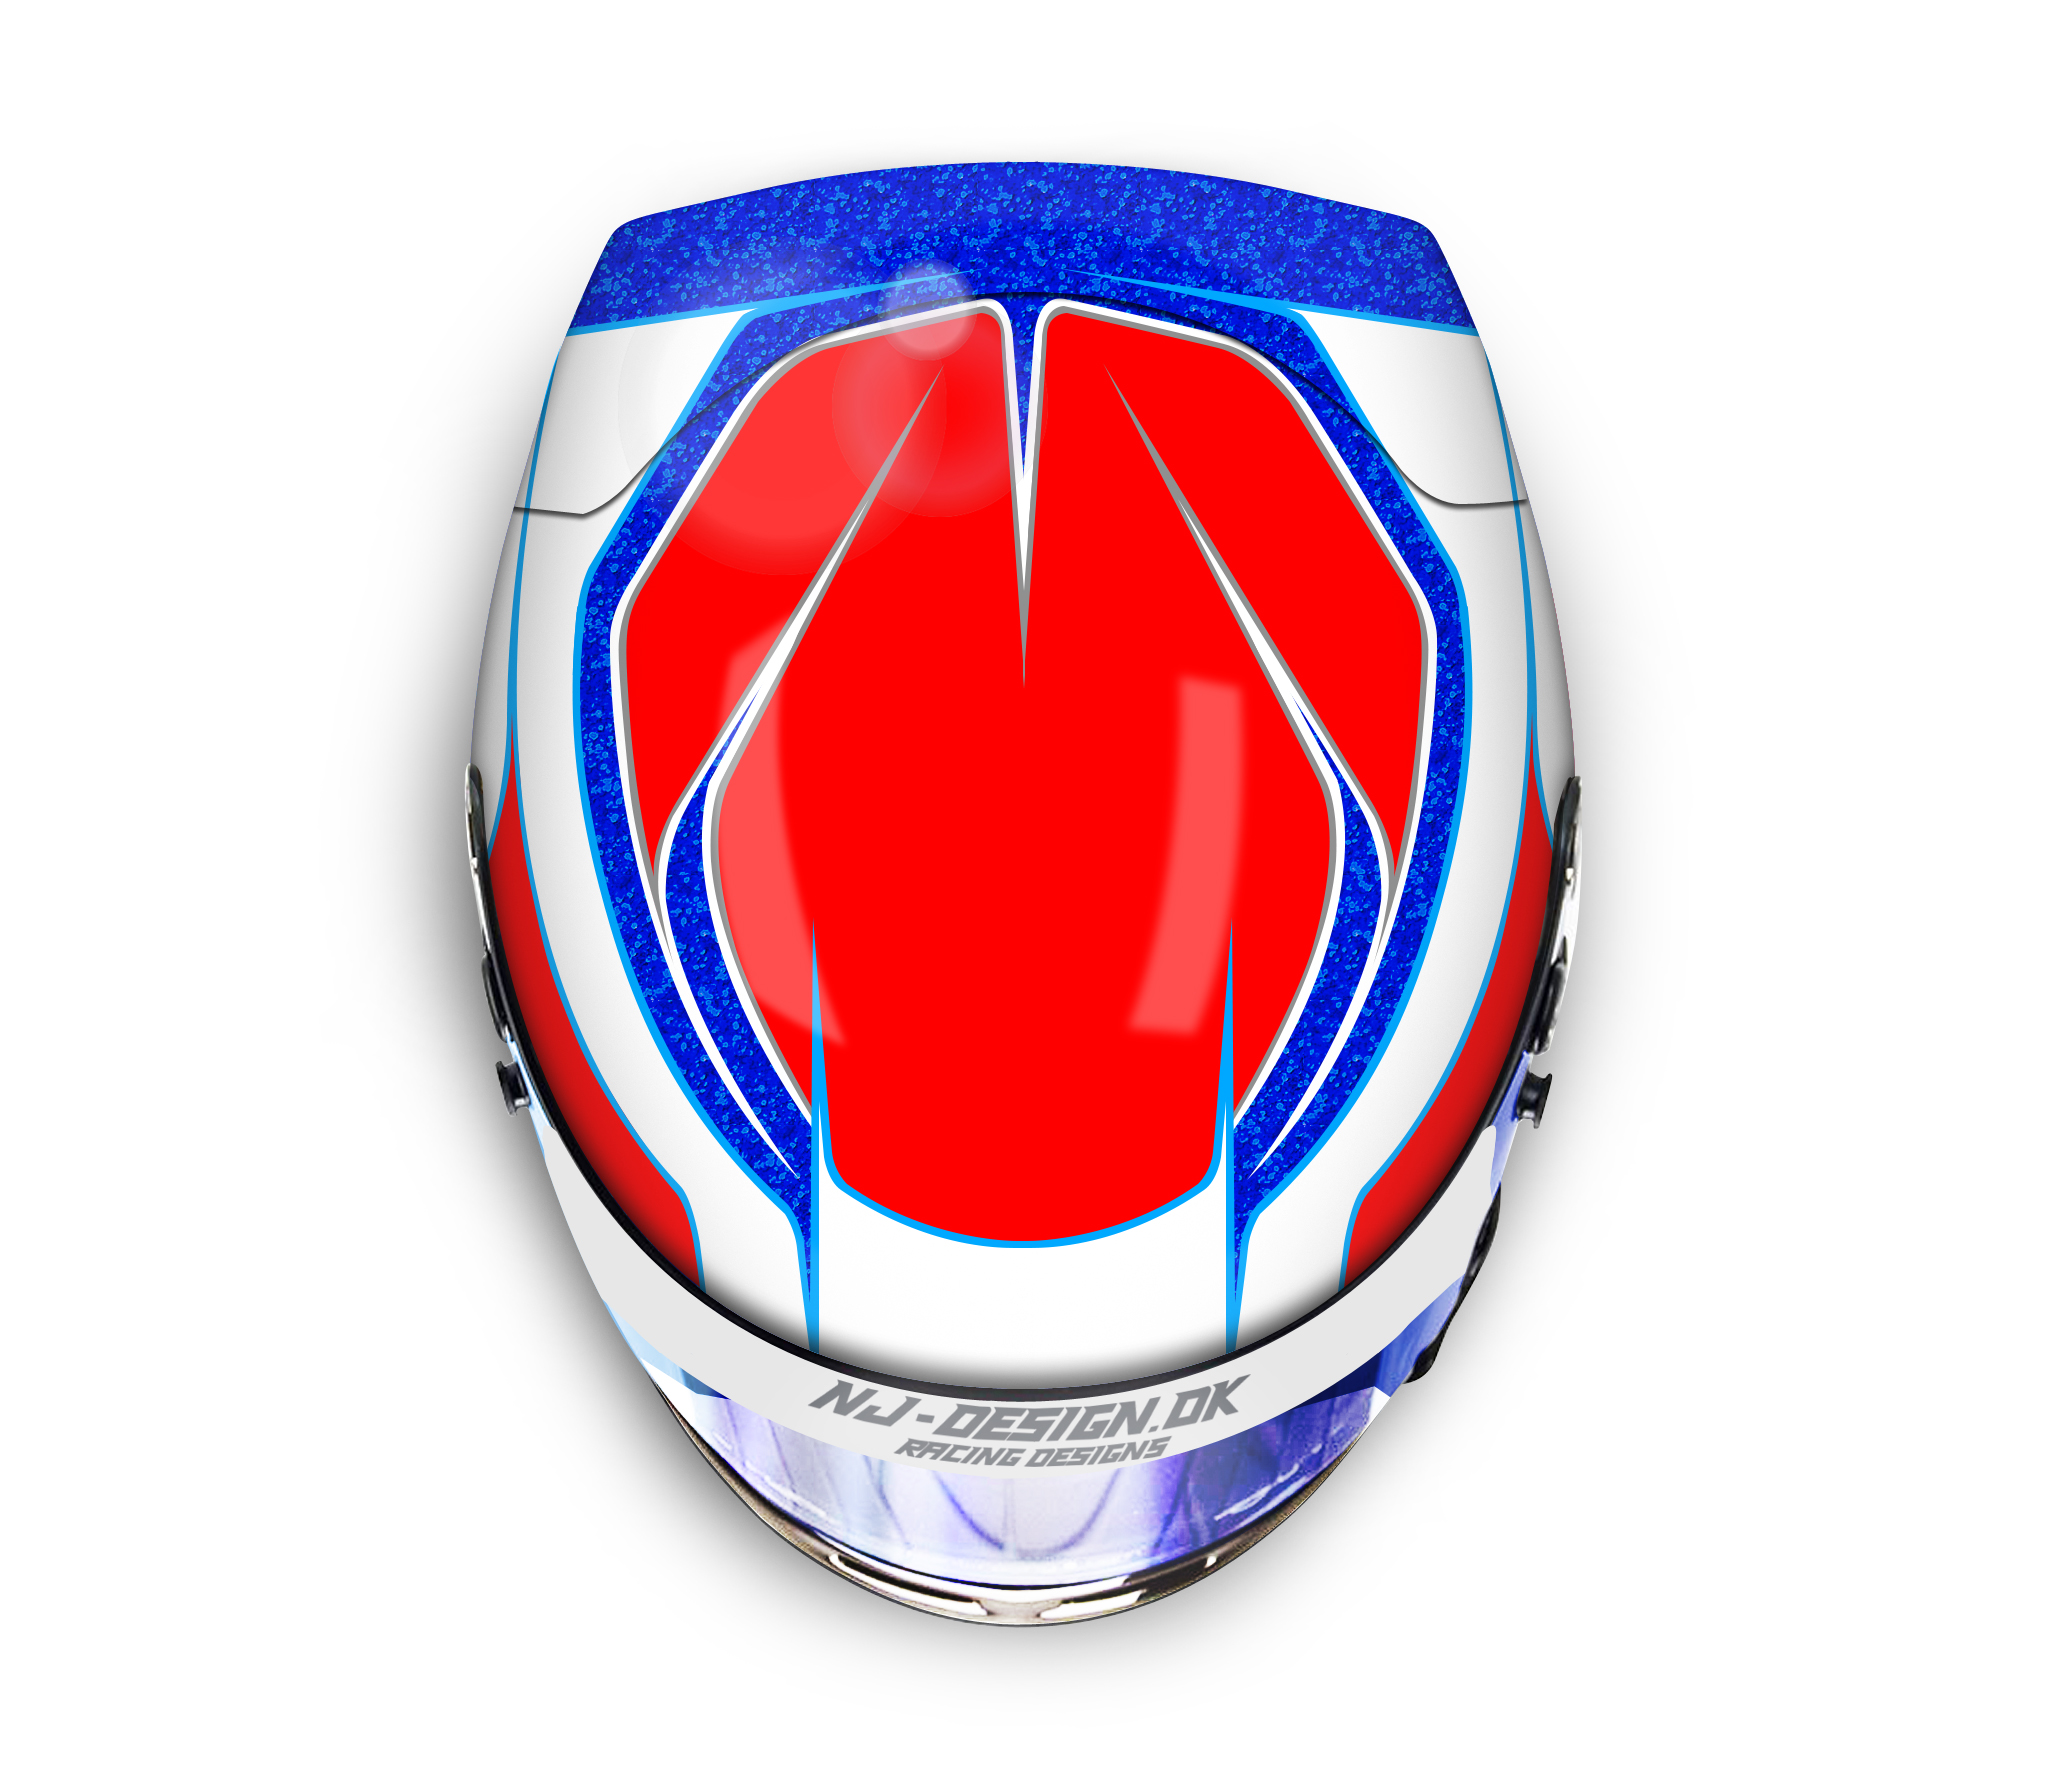 Arail helmet design